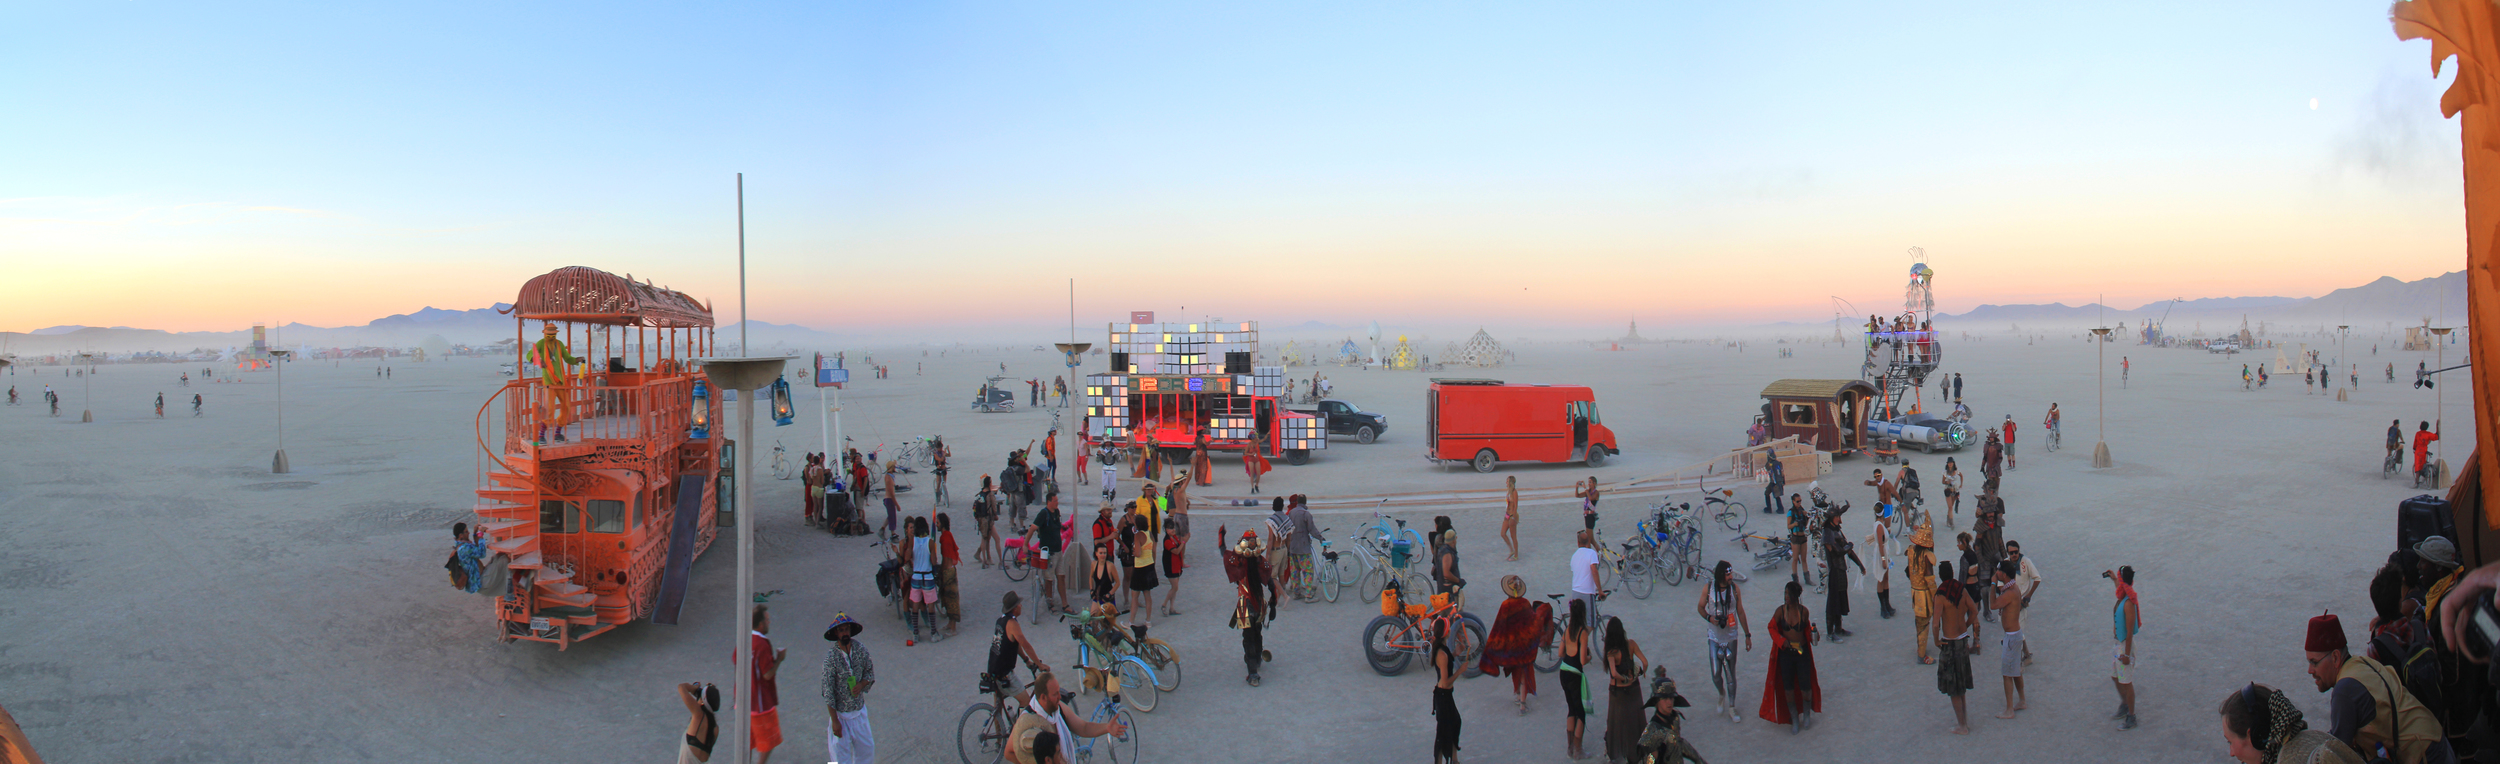 Burning Man, 2012